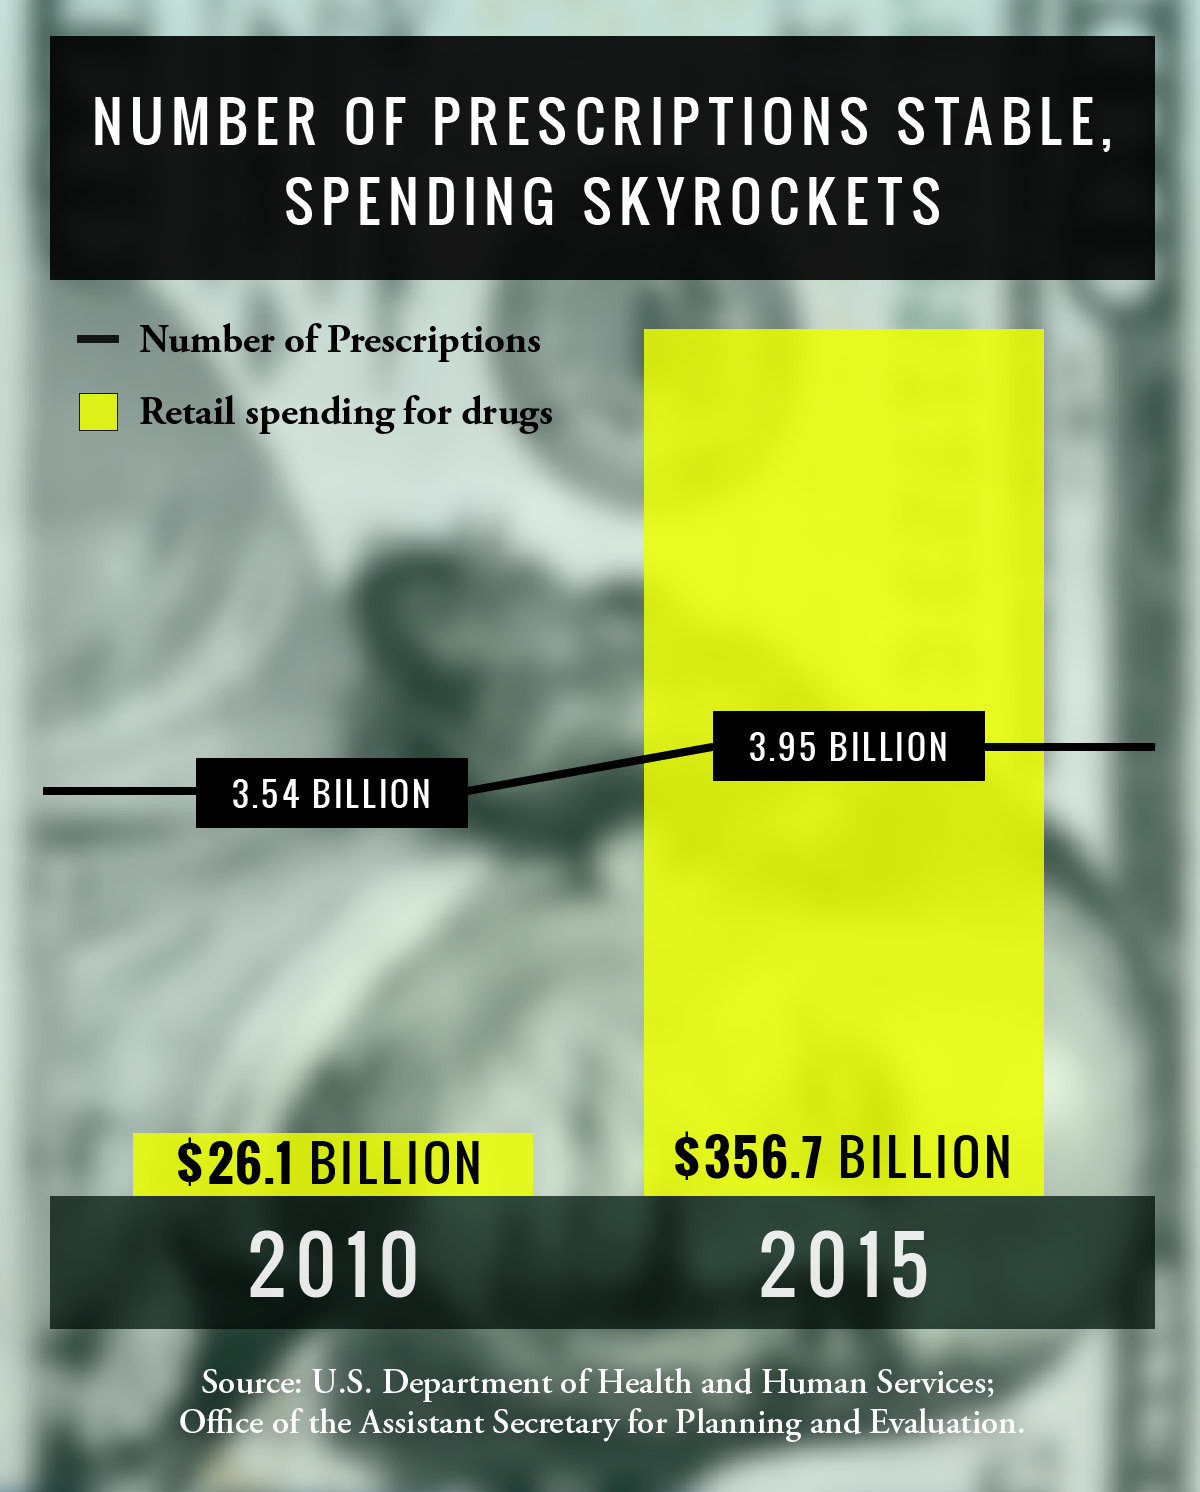 Spending Skyrockets